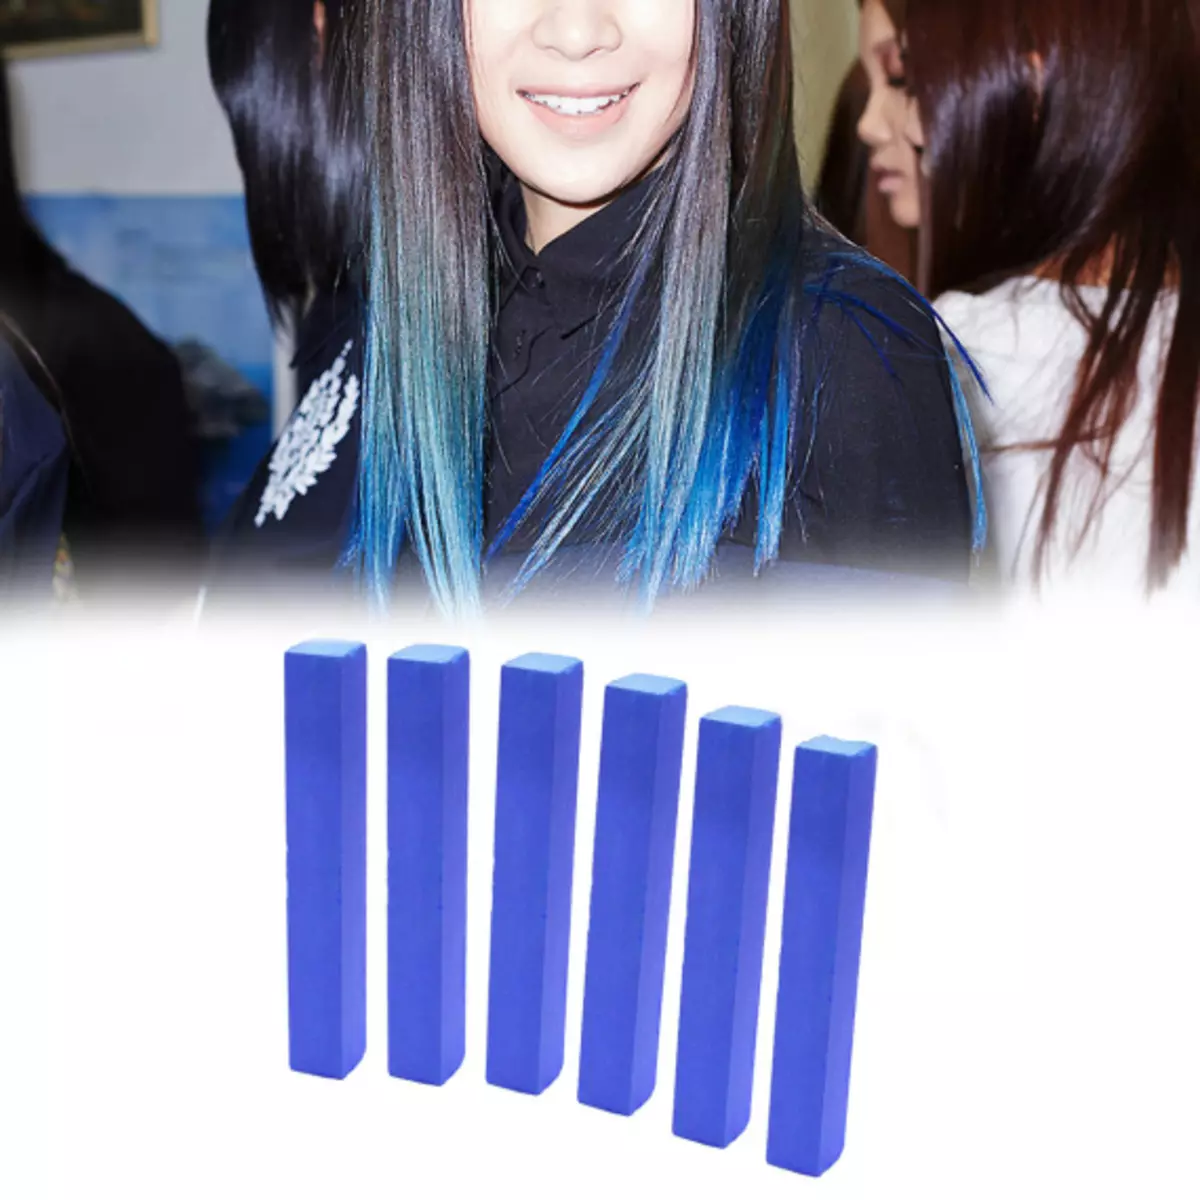 Plava boja kose: Pregled otpornih boja kose s plavim tampom, od svijetlo plave do crne i plave nijanse 5402_36